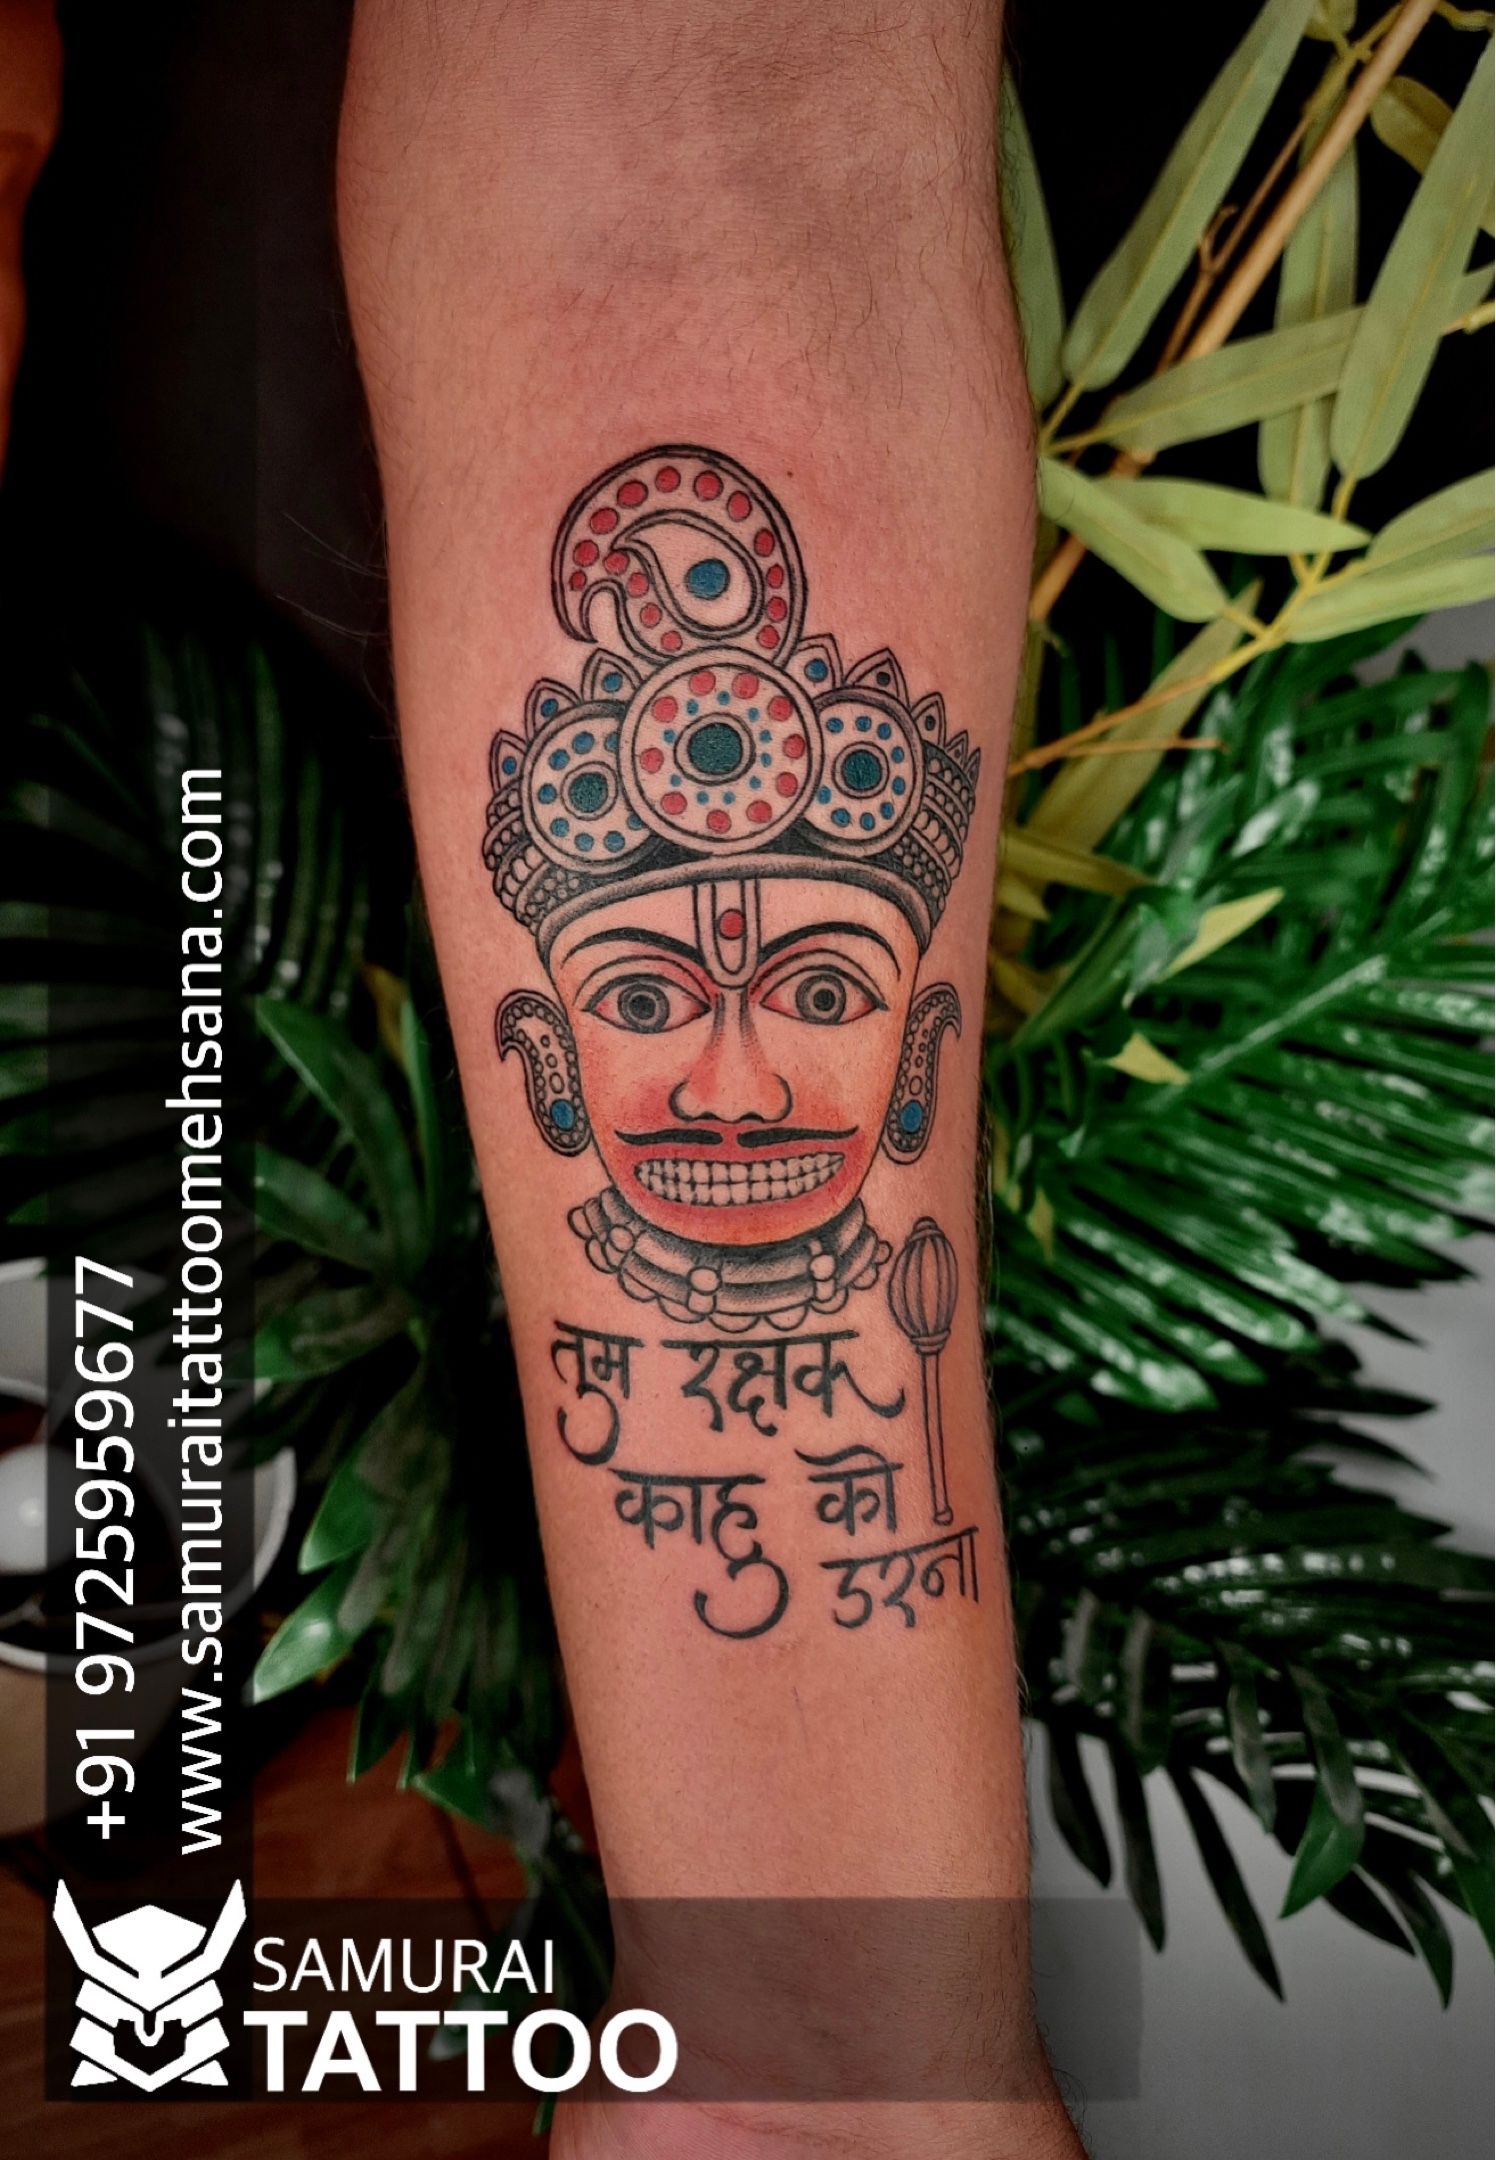 Tattoo uploaded by Samurai Tattoo mehsana  Hanuman ji tattoo Hanuman dada  tattoo Hanuman tattoo Bajrangbali tattoo  Tattoodo